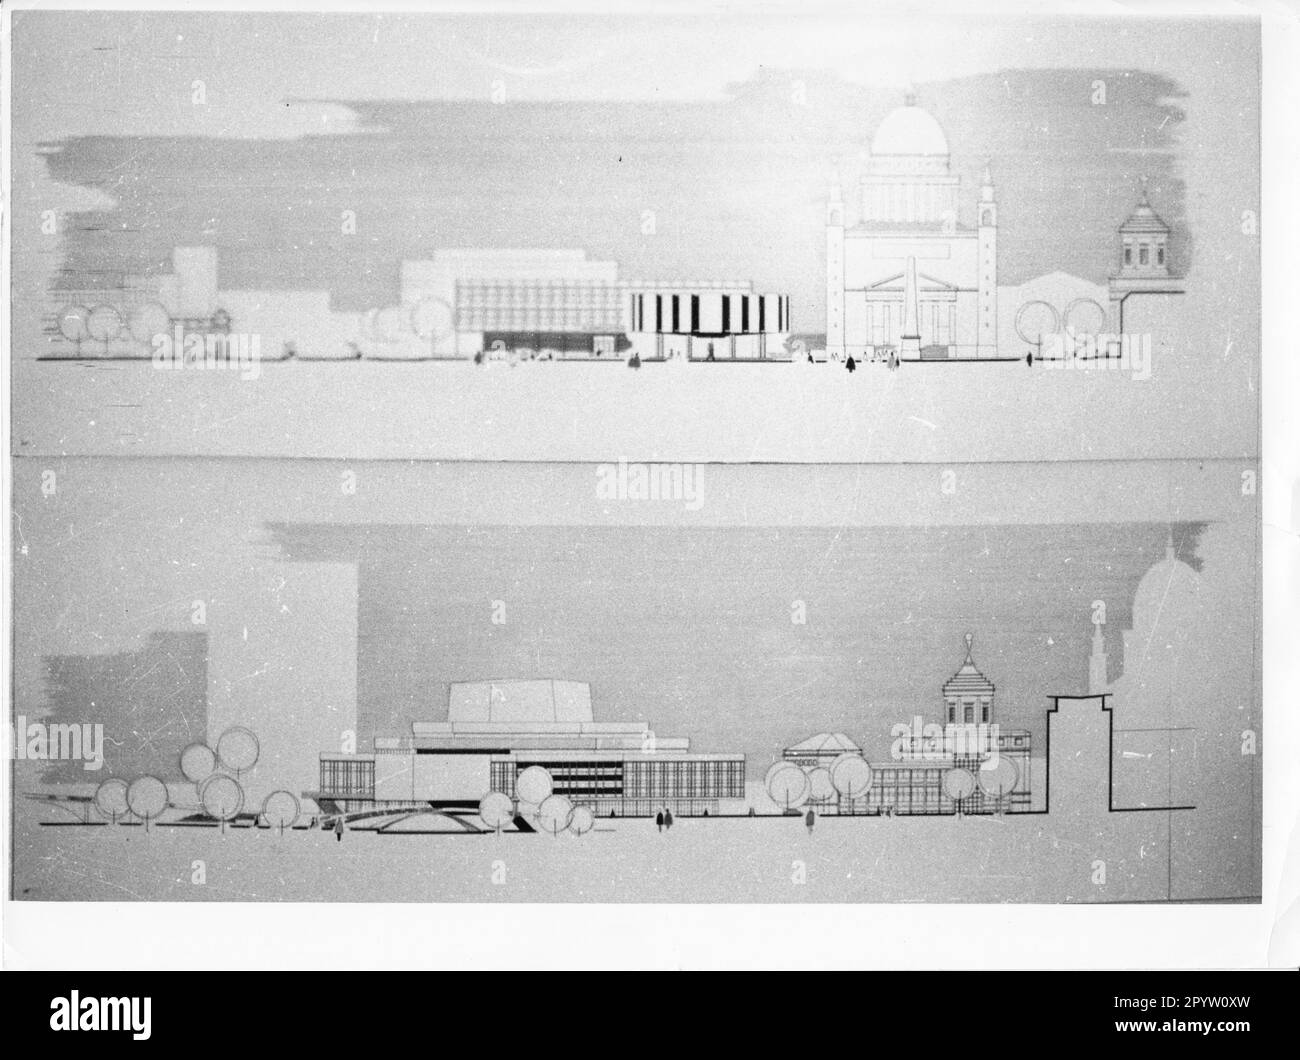 Progetto per la riprogettazione del centro città da parte di Potsdam presso l'Alter Markt negli anni '1960s. GDR. Architecture.model. Competizione di pianificazione urbana. Foto: MAZ/Archivio, 60s. [traduzione automatica] Foto Stock